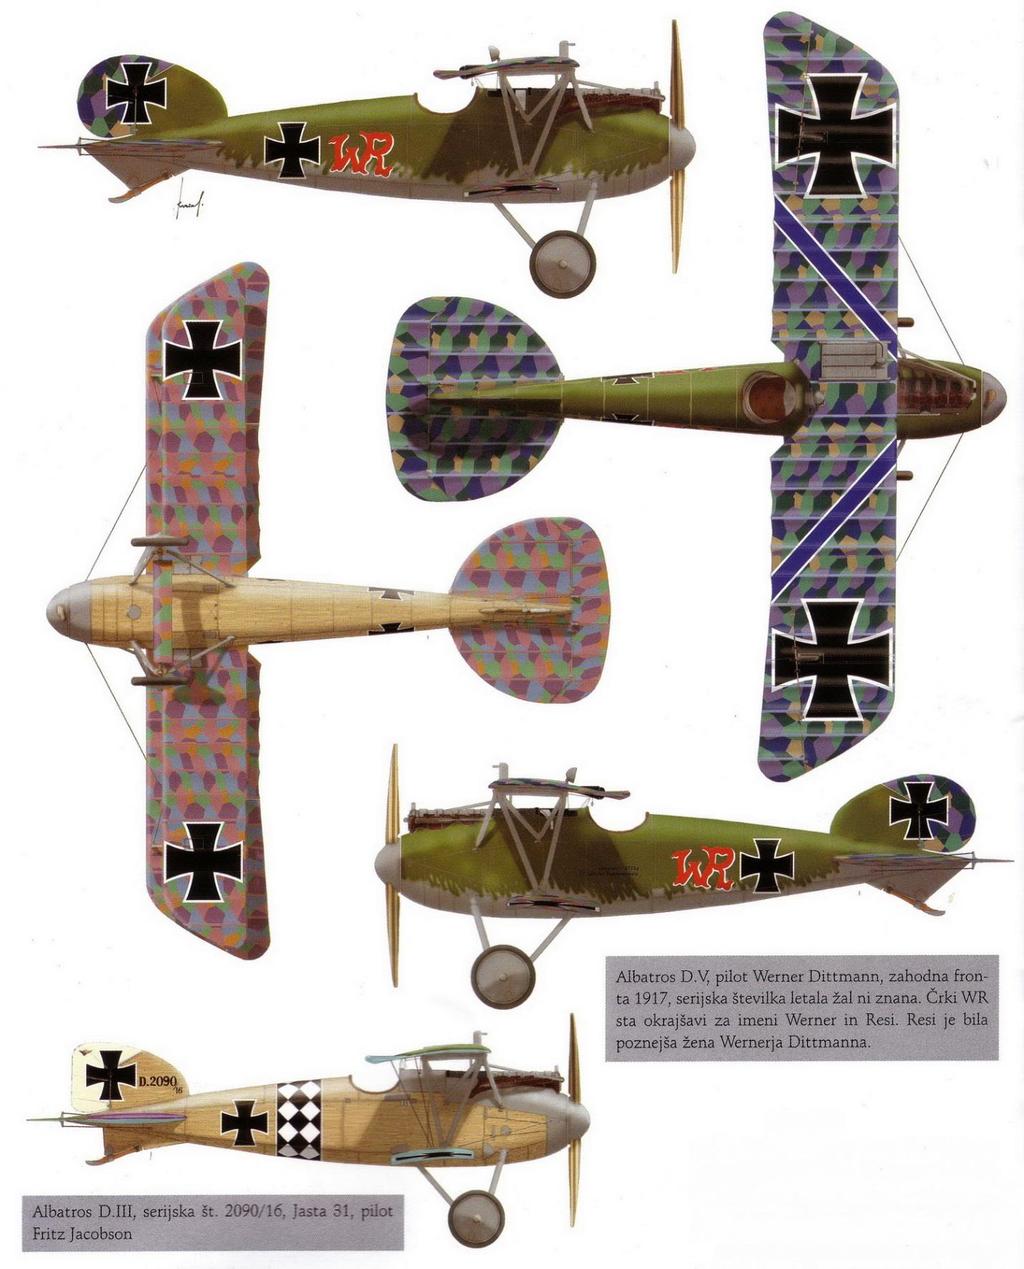 Albatros D V, Pilot Werner Dittmann, Westfront 1917; leider ist die Seriennummer des Flugzeugs unbekannt.